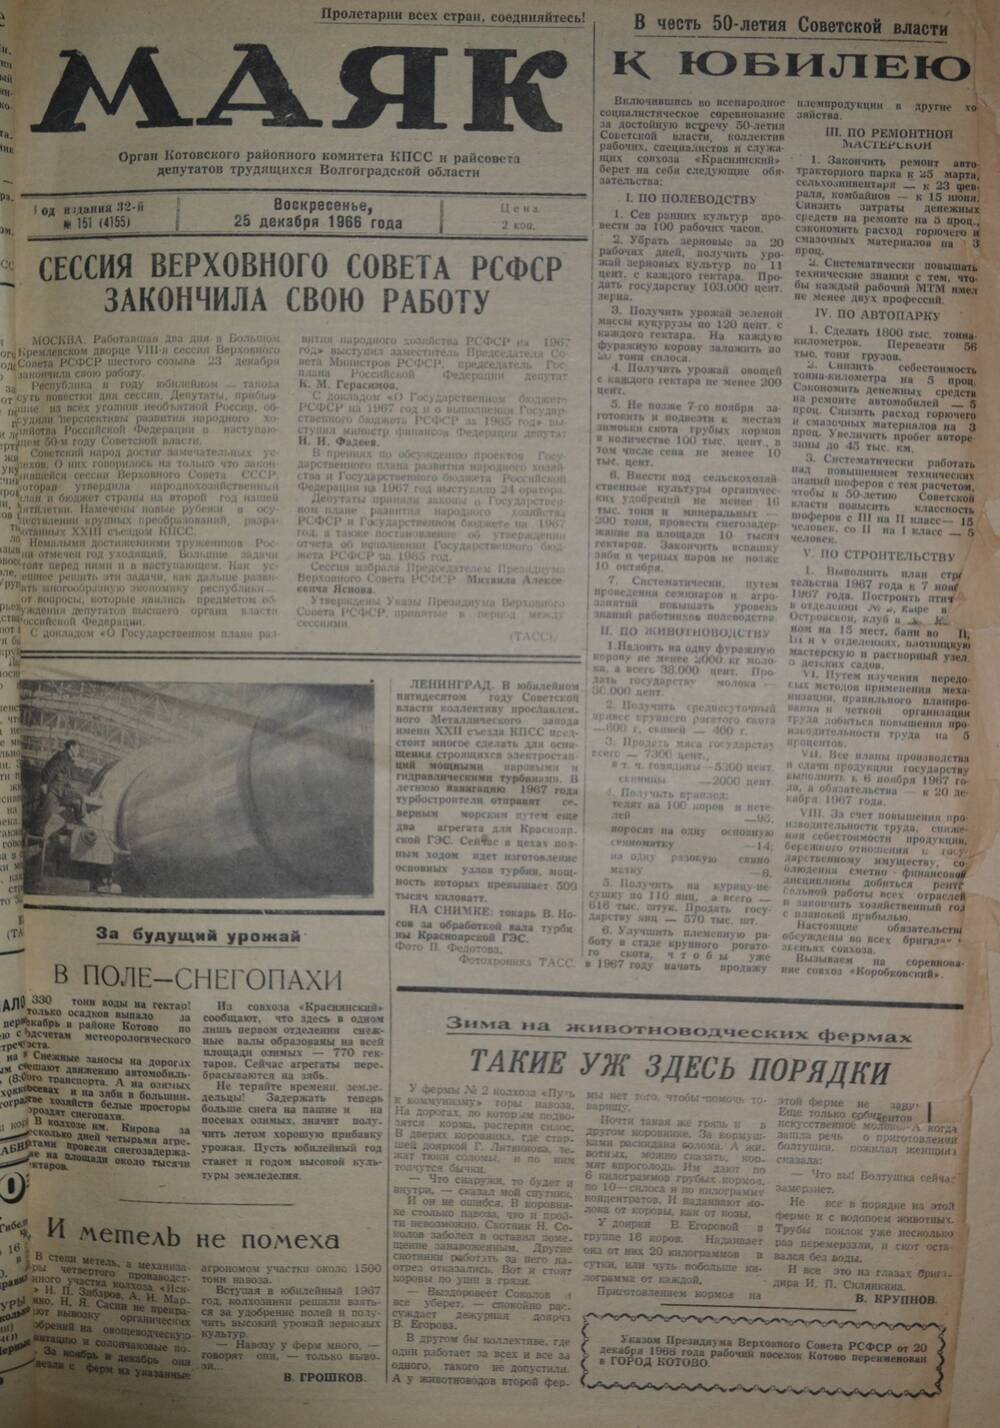 Газета Маяк № 151 (4155). Воскресенье 25 декабря 1966 года.